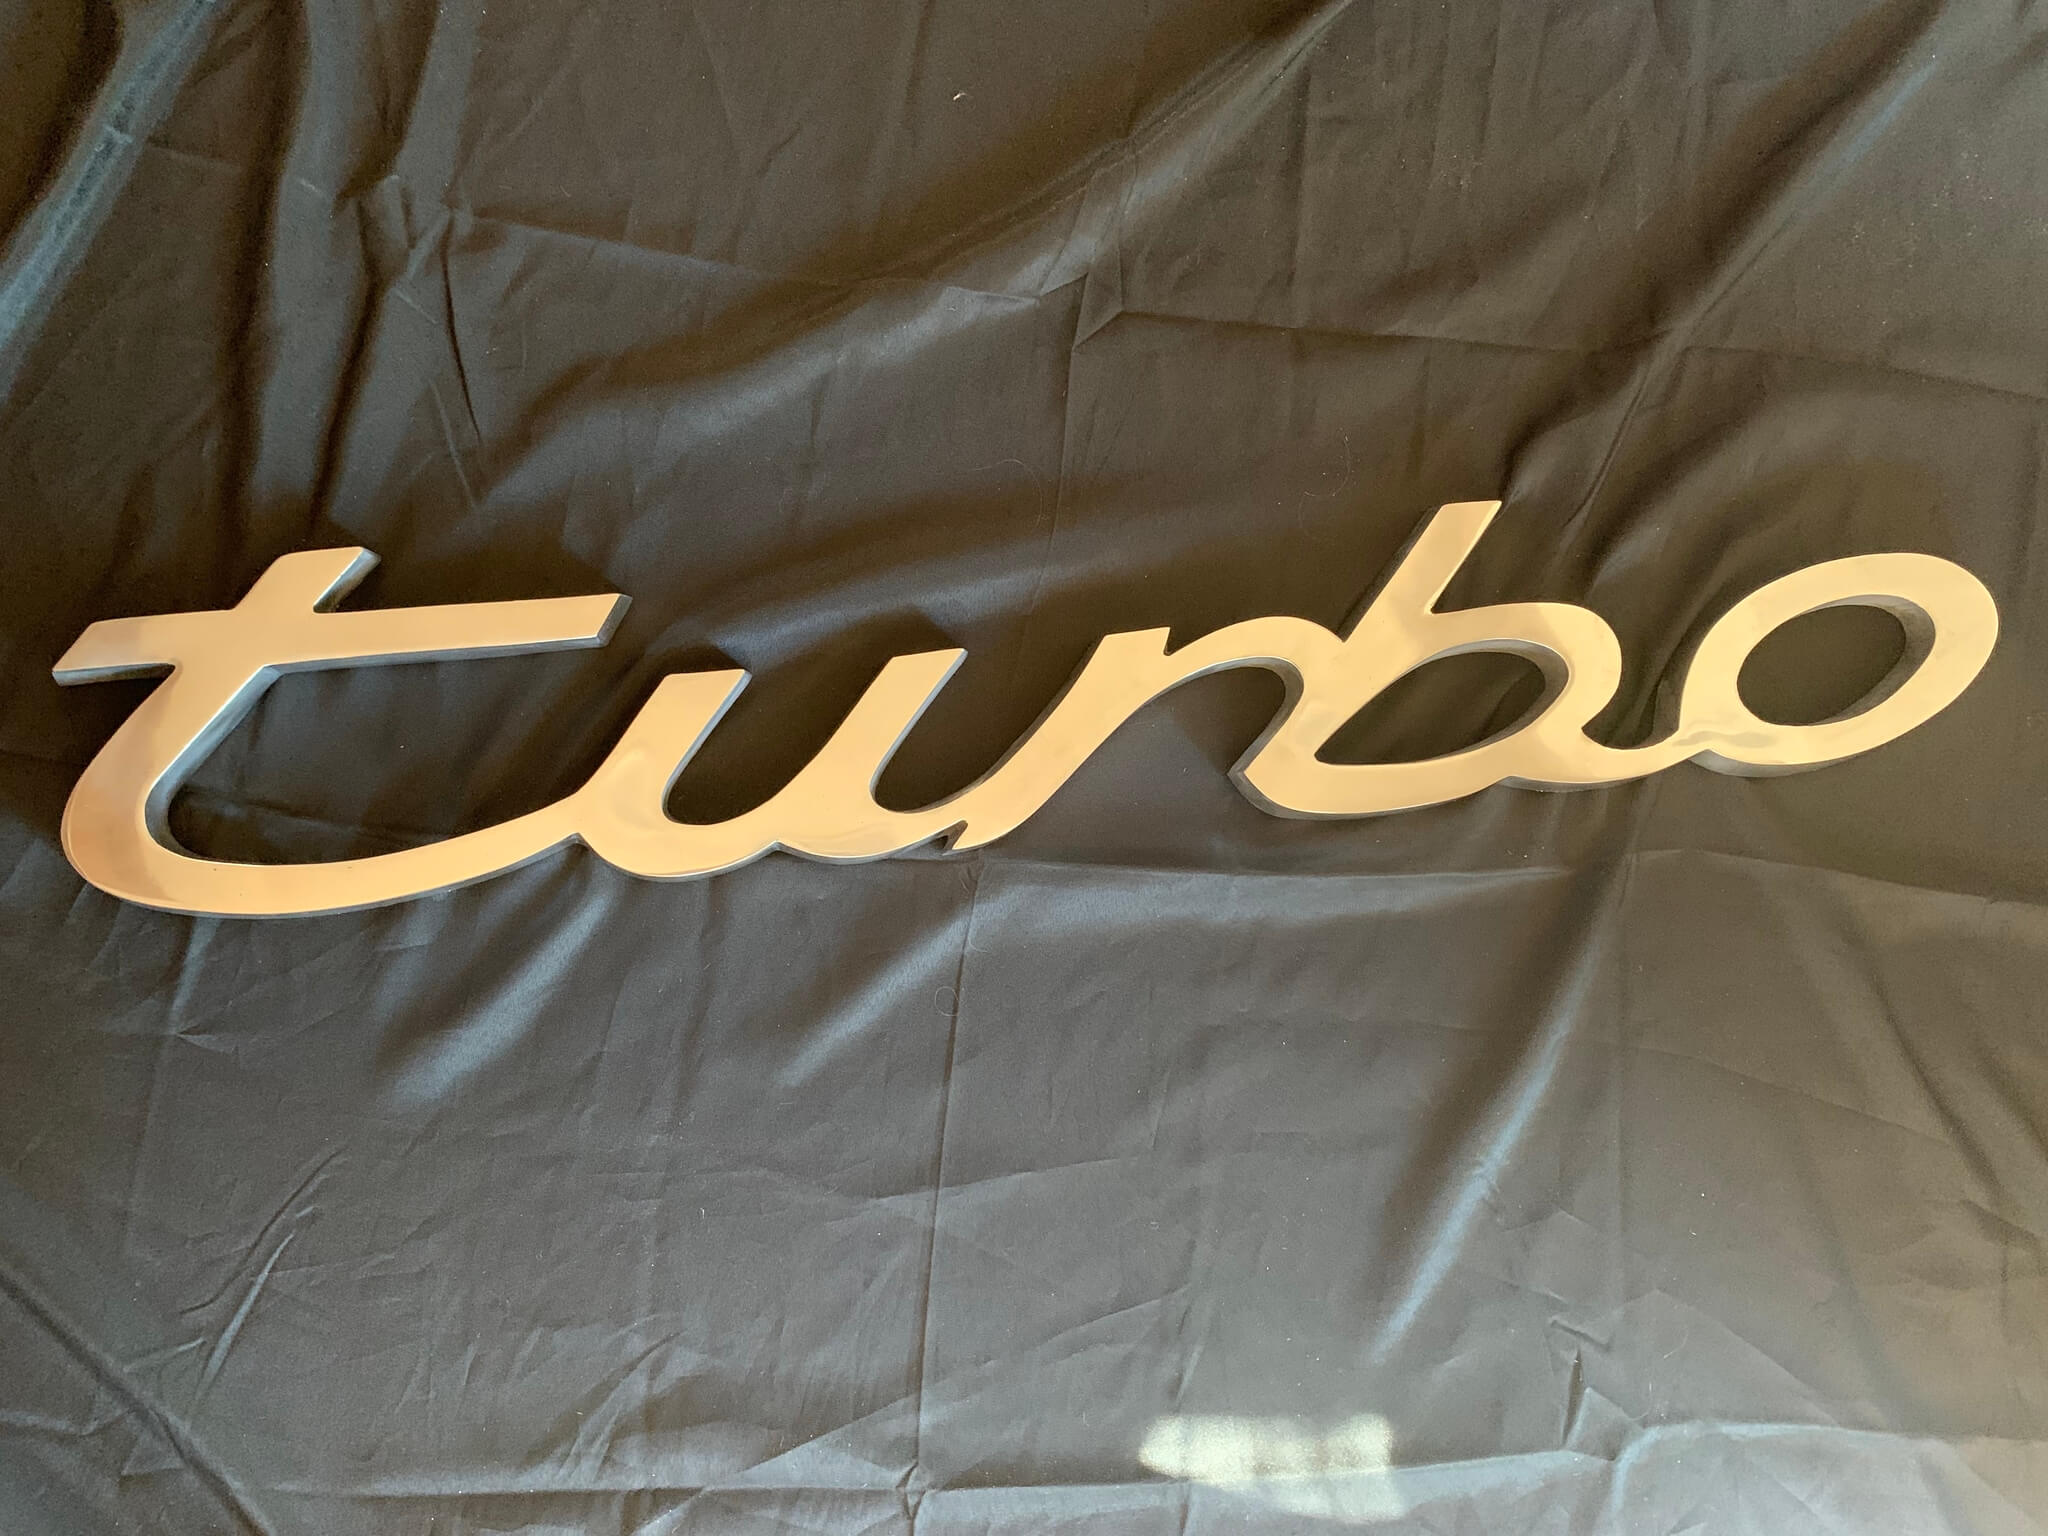 Authentic Porsche Dealership Turbo Sign (50 x 9)